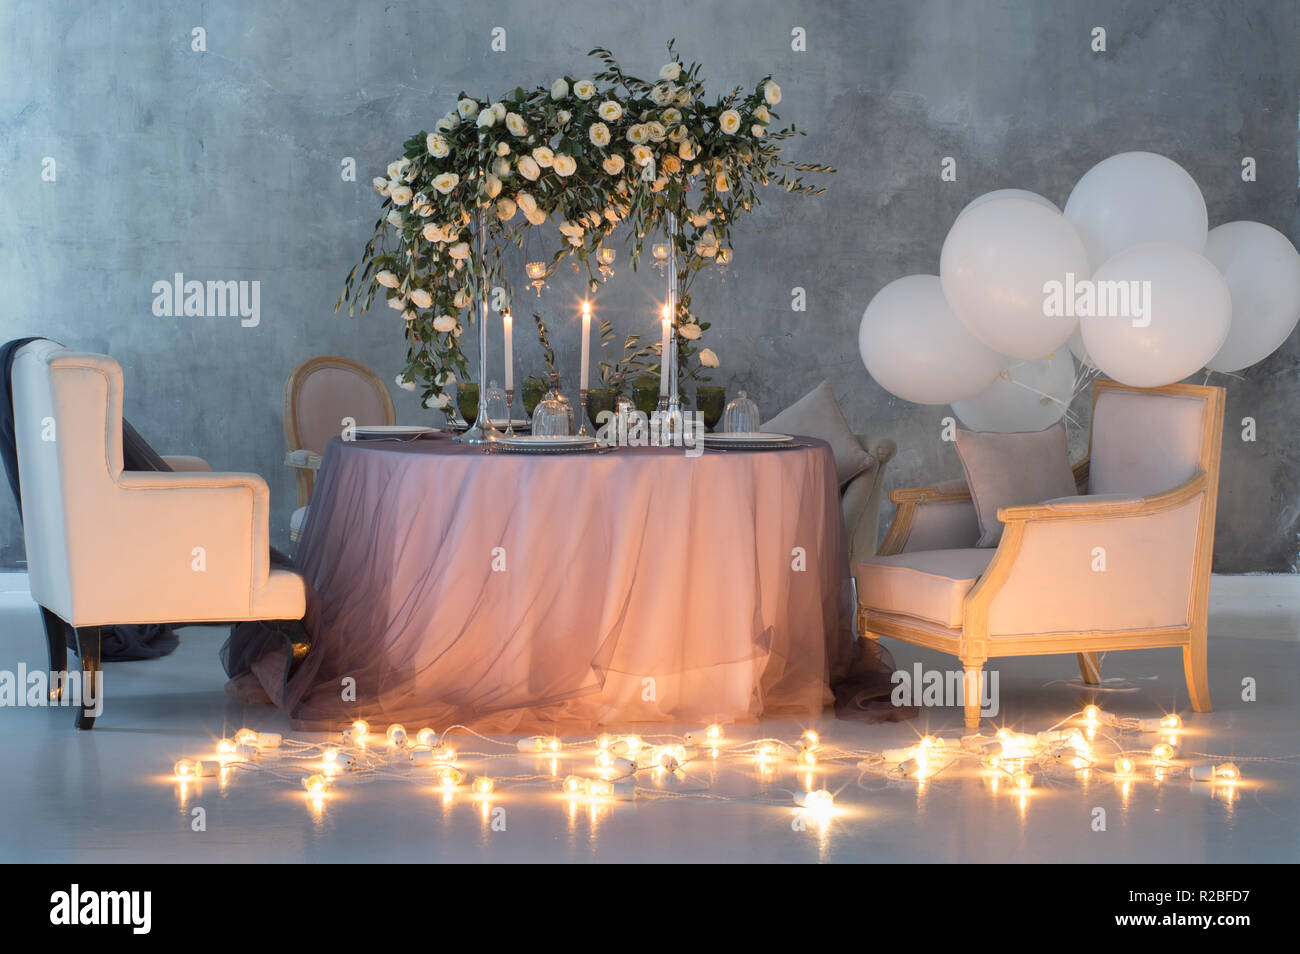 Hochzeit Tischdekoration mit Rosen, Lampen und Ballons Stockfoto